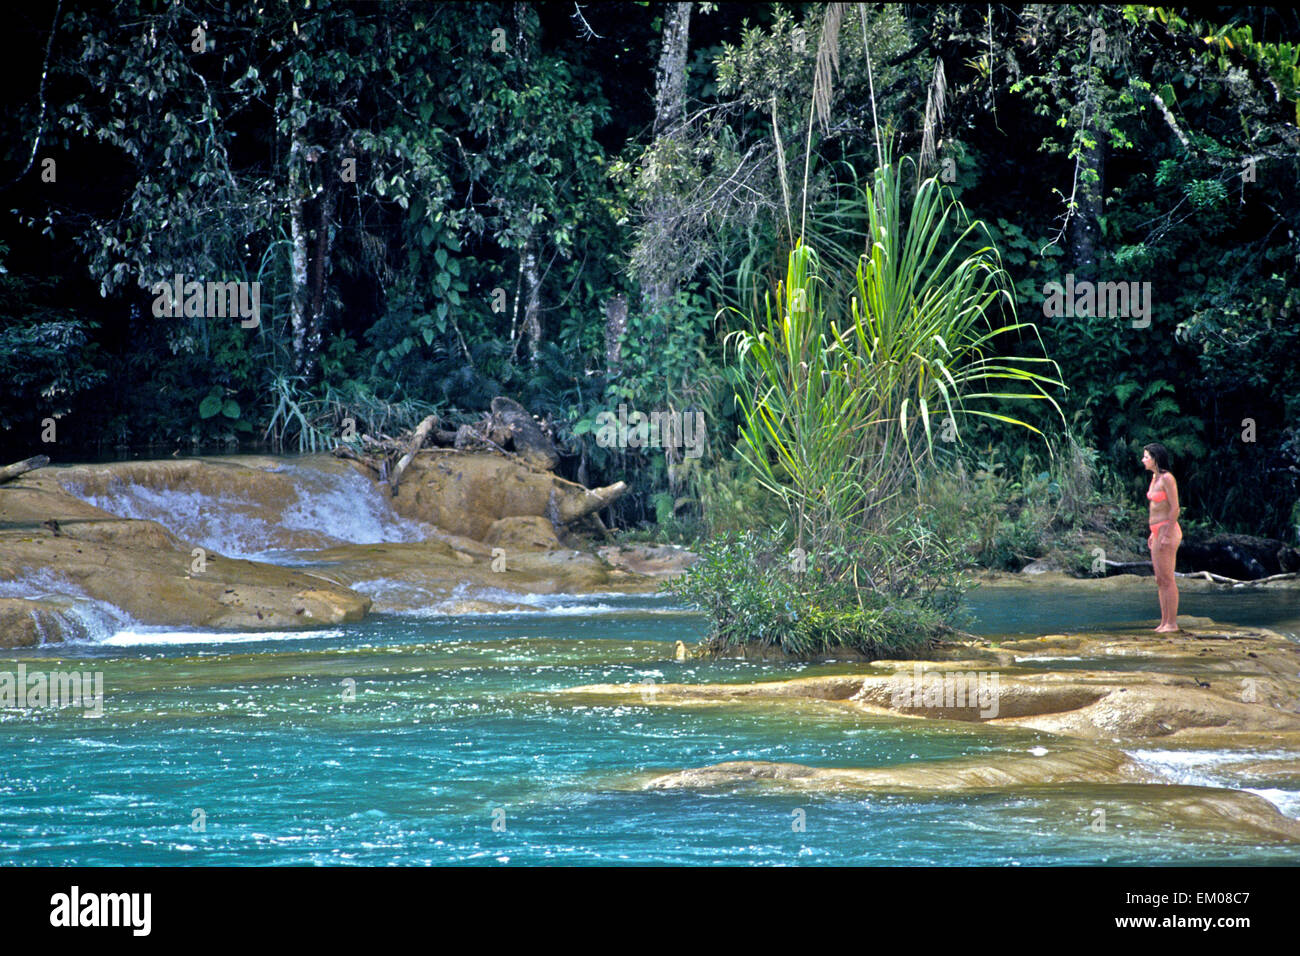 Mexiko - Aqua Azul Kaskaden in Chiapas in der Nähe von Palenque am Fluss gewählt sind ein muss für Touristen, die in den scheinbar sicheren blauen Wasser schwimmen können. Stockfoto